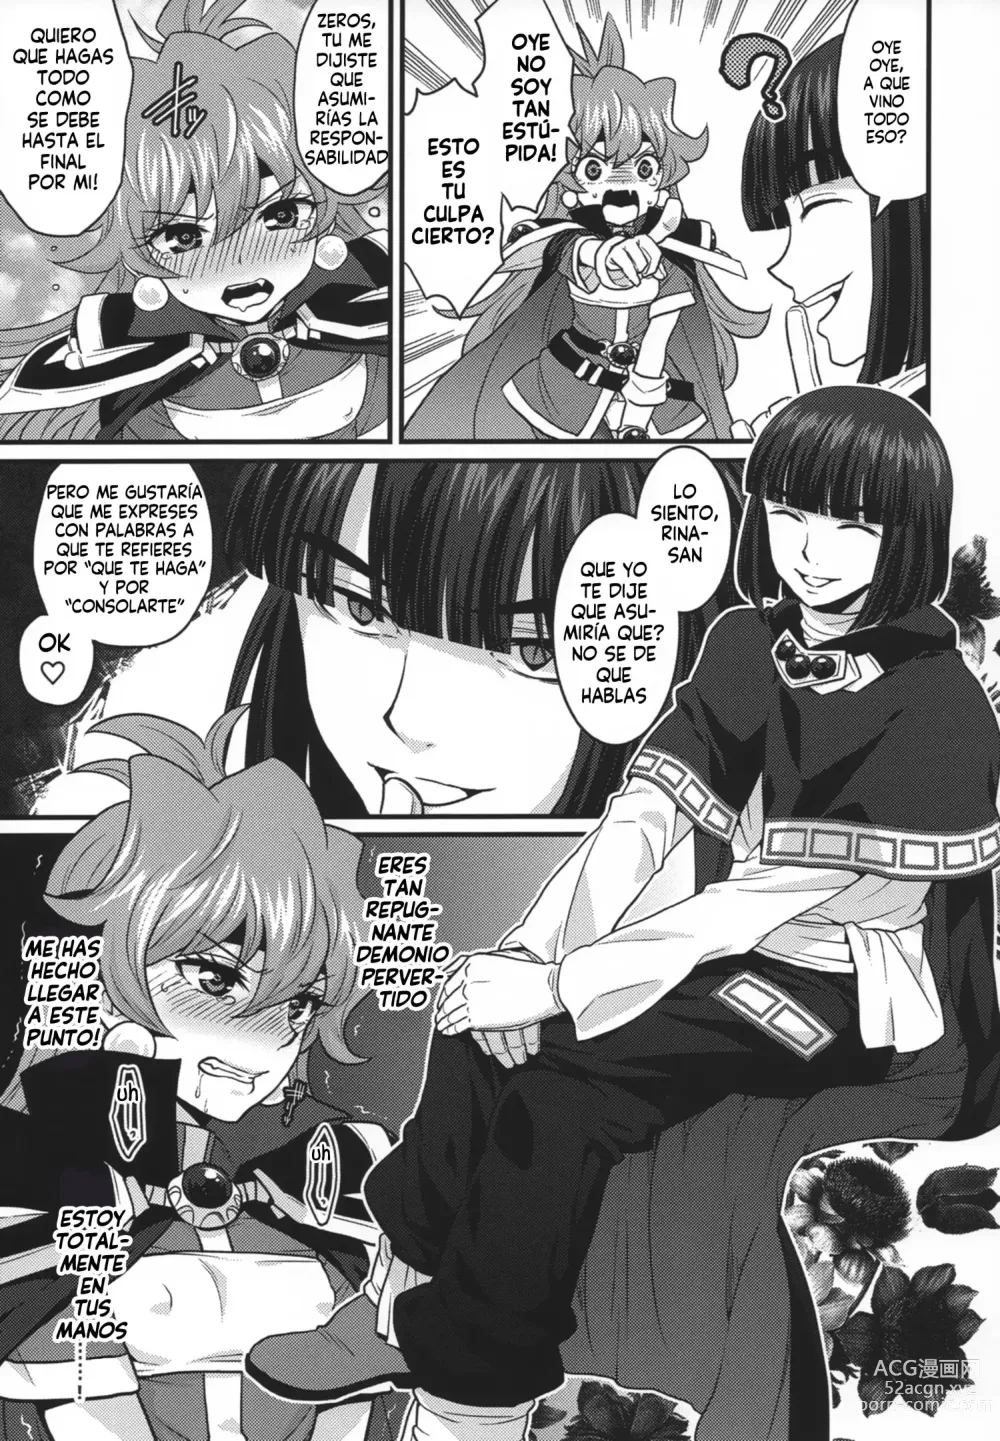 Page 7 of doujinshi Choro Sugi Desu Yo, Lina-san.